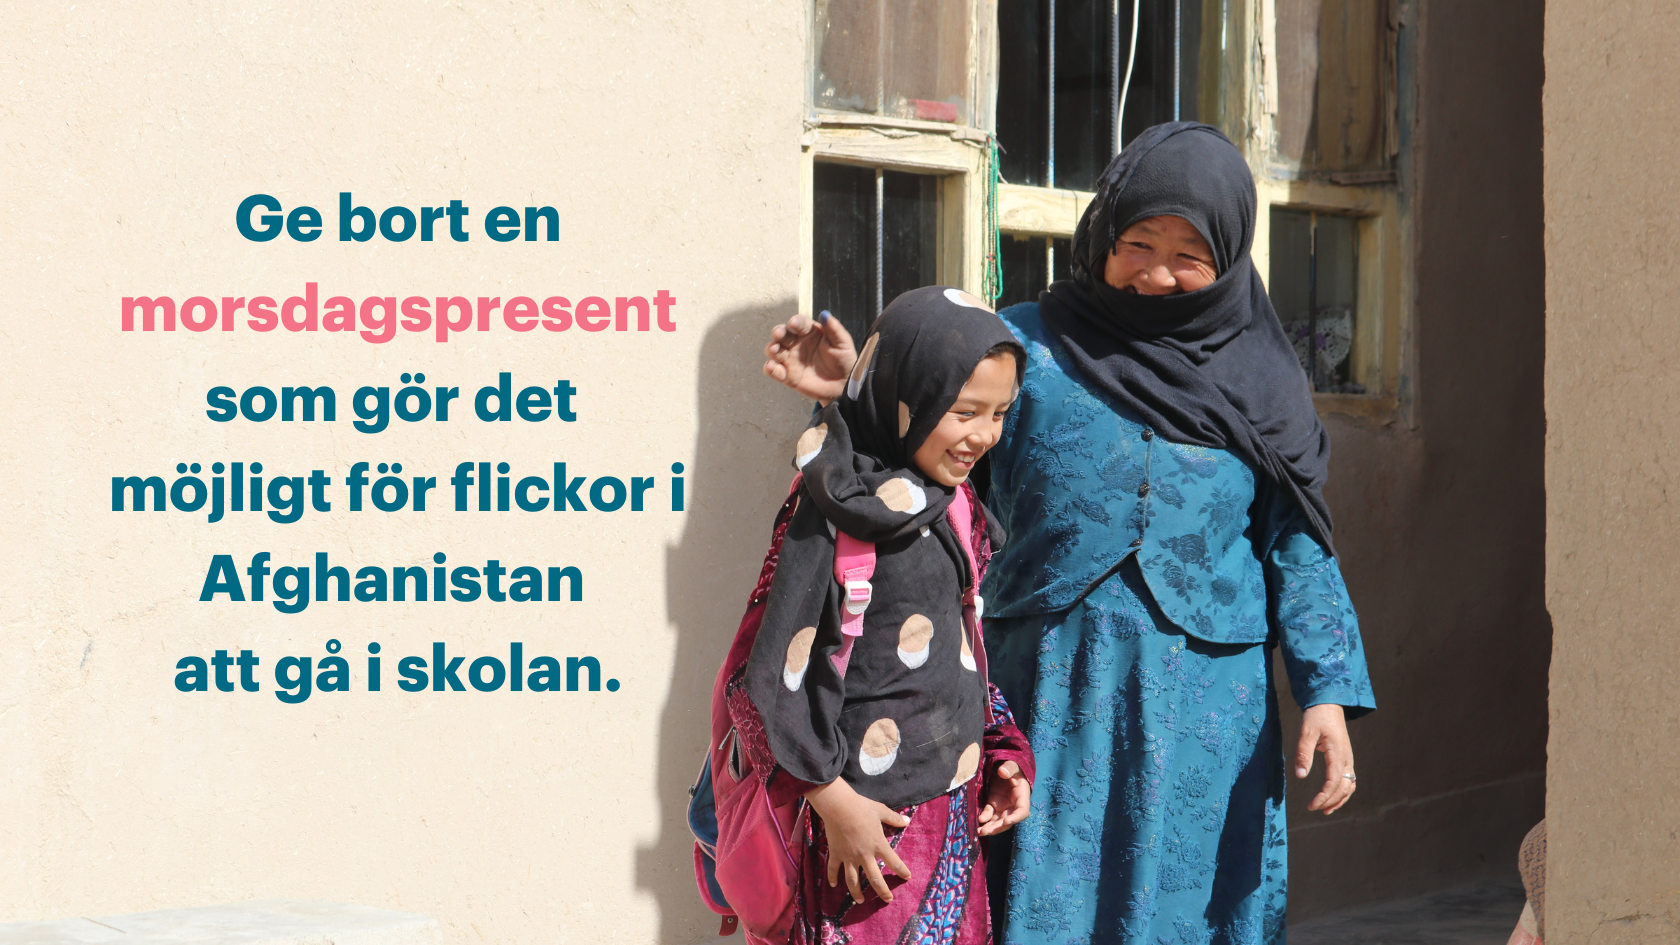 Ge bort en morsdagspresent som gör det möjligt för flickor i Afghanistan att gå i skolan.